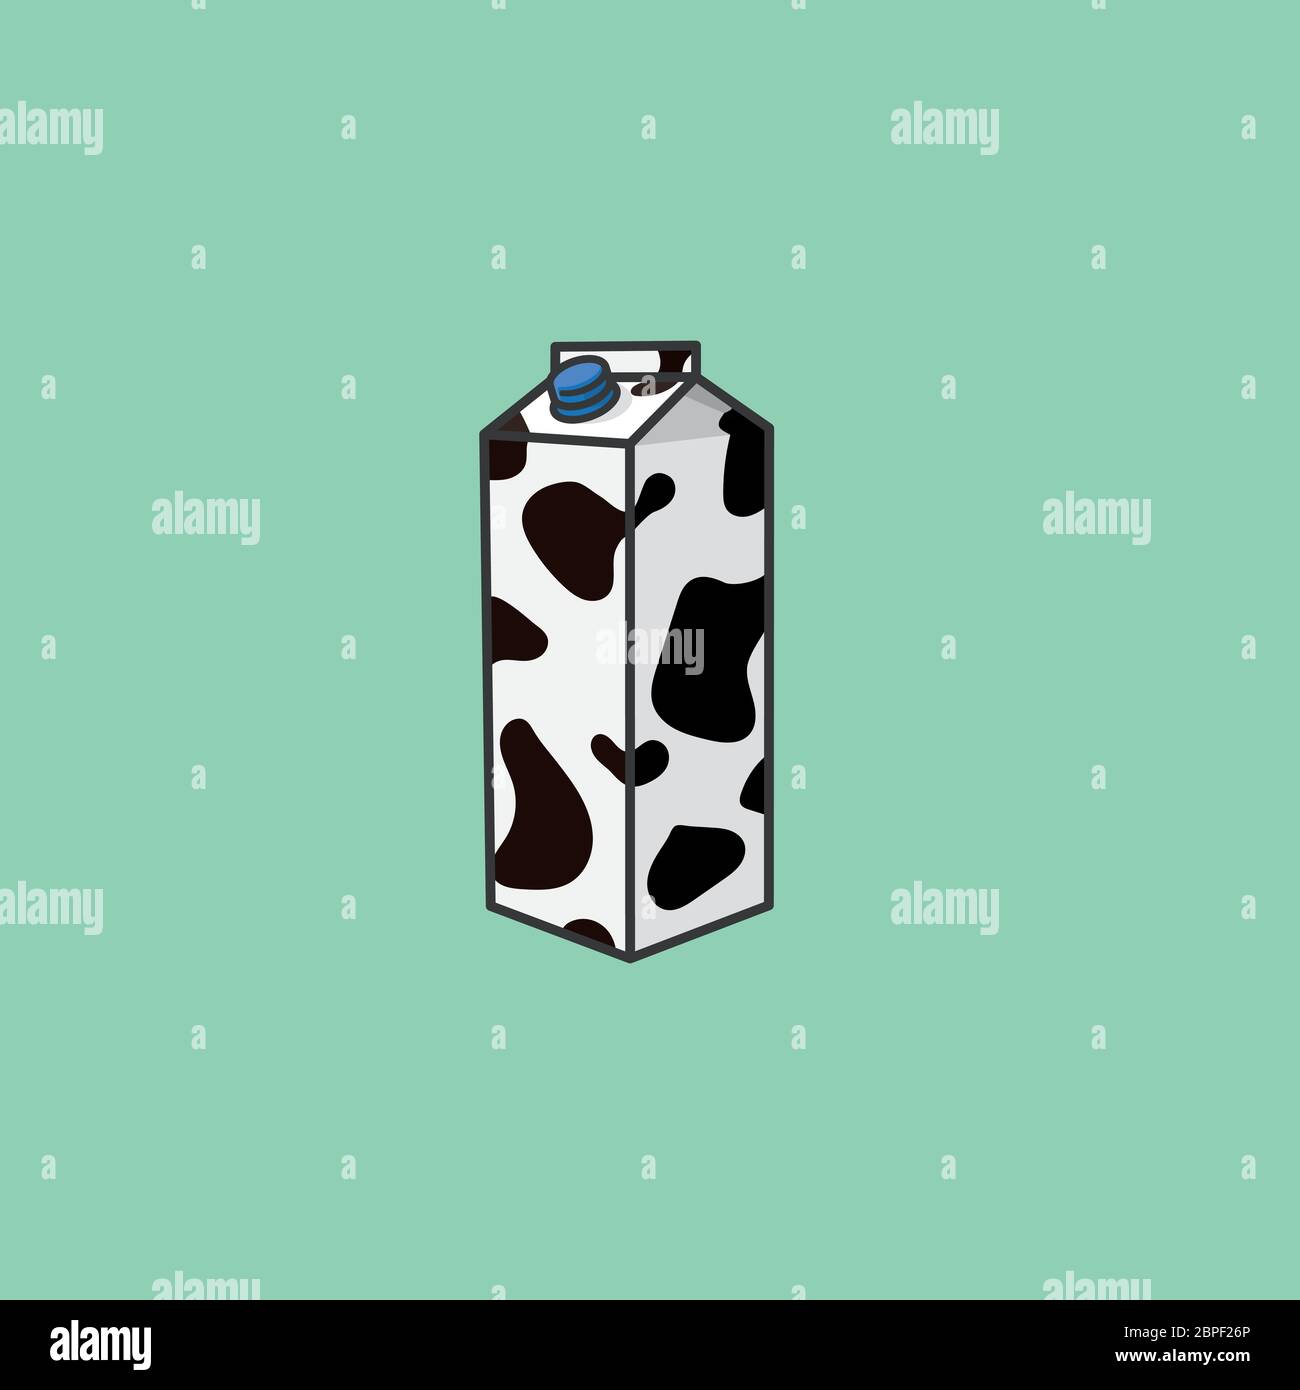 Milchkarton mit Kuhmuster Vektor Illustration zum Weltmilchtag am 1. Juni. Gesunde Ernährung und Milchprodukte Symbol. Stock Vektor